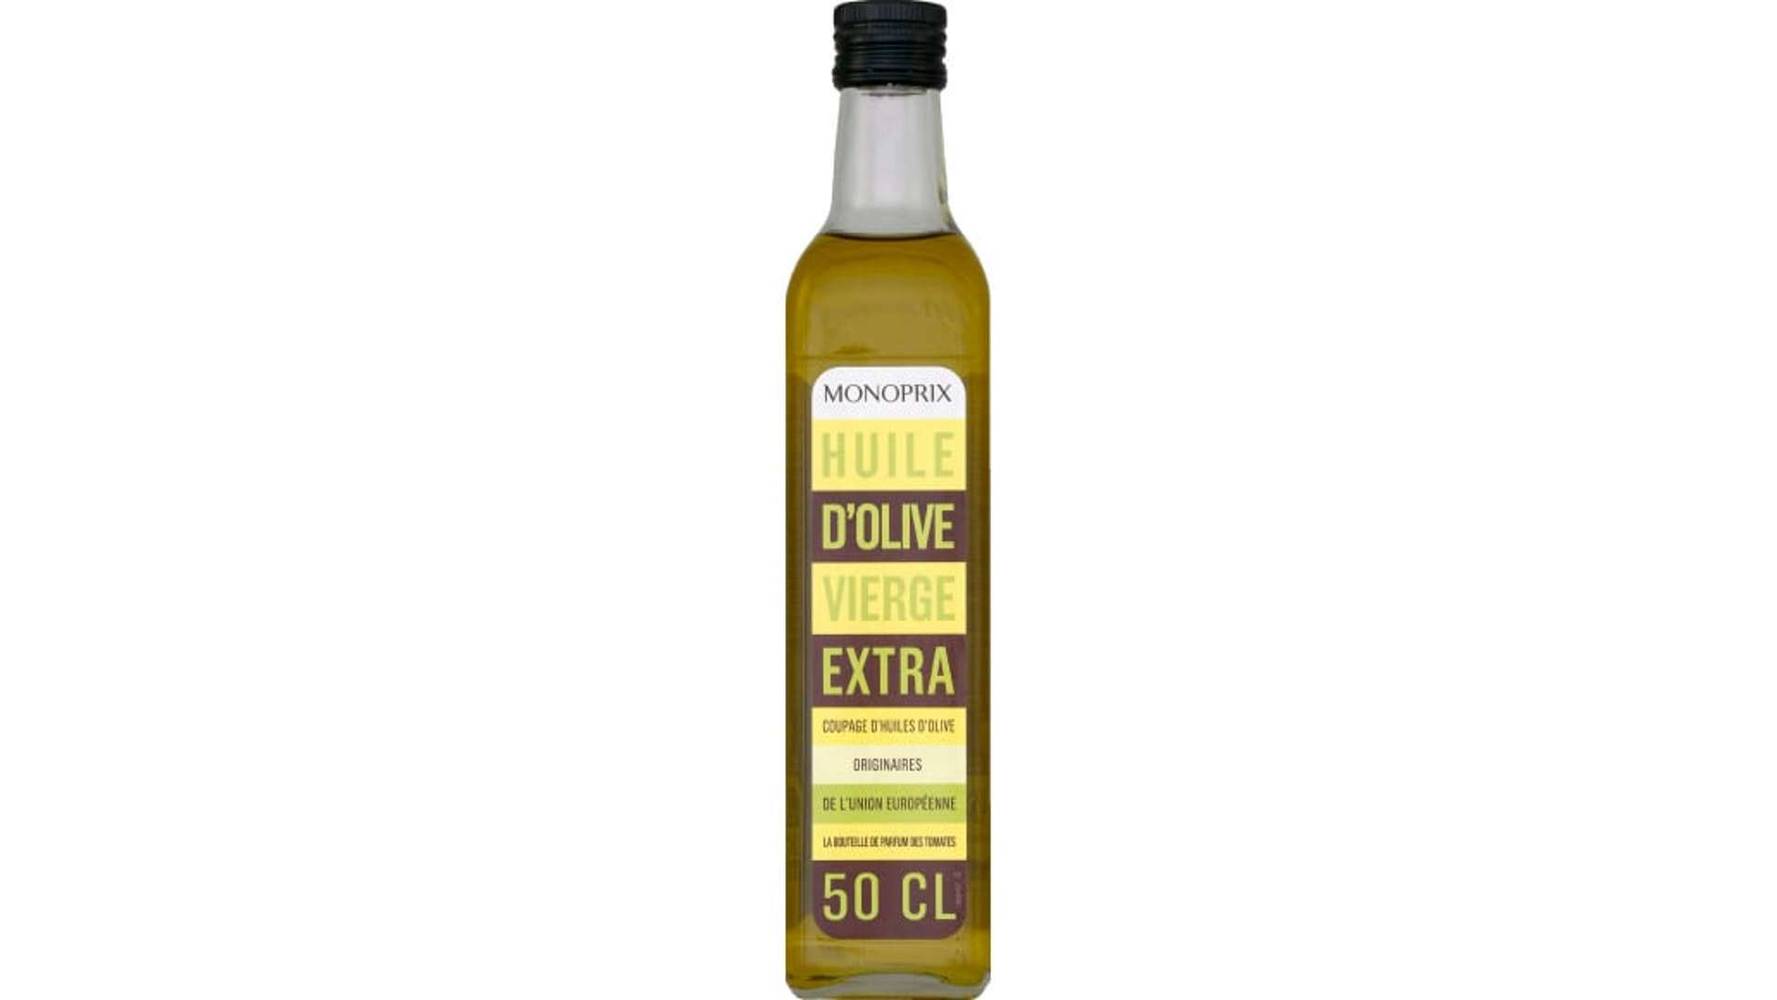 Monoprix Huile d'olive vierge extra La bouteille de 50 cl